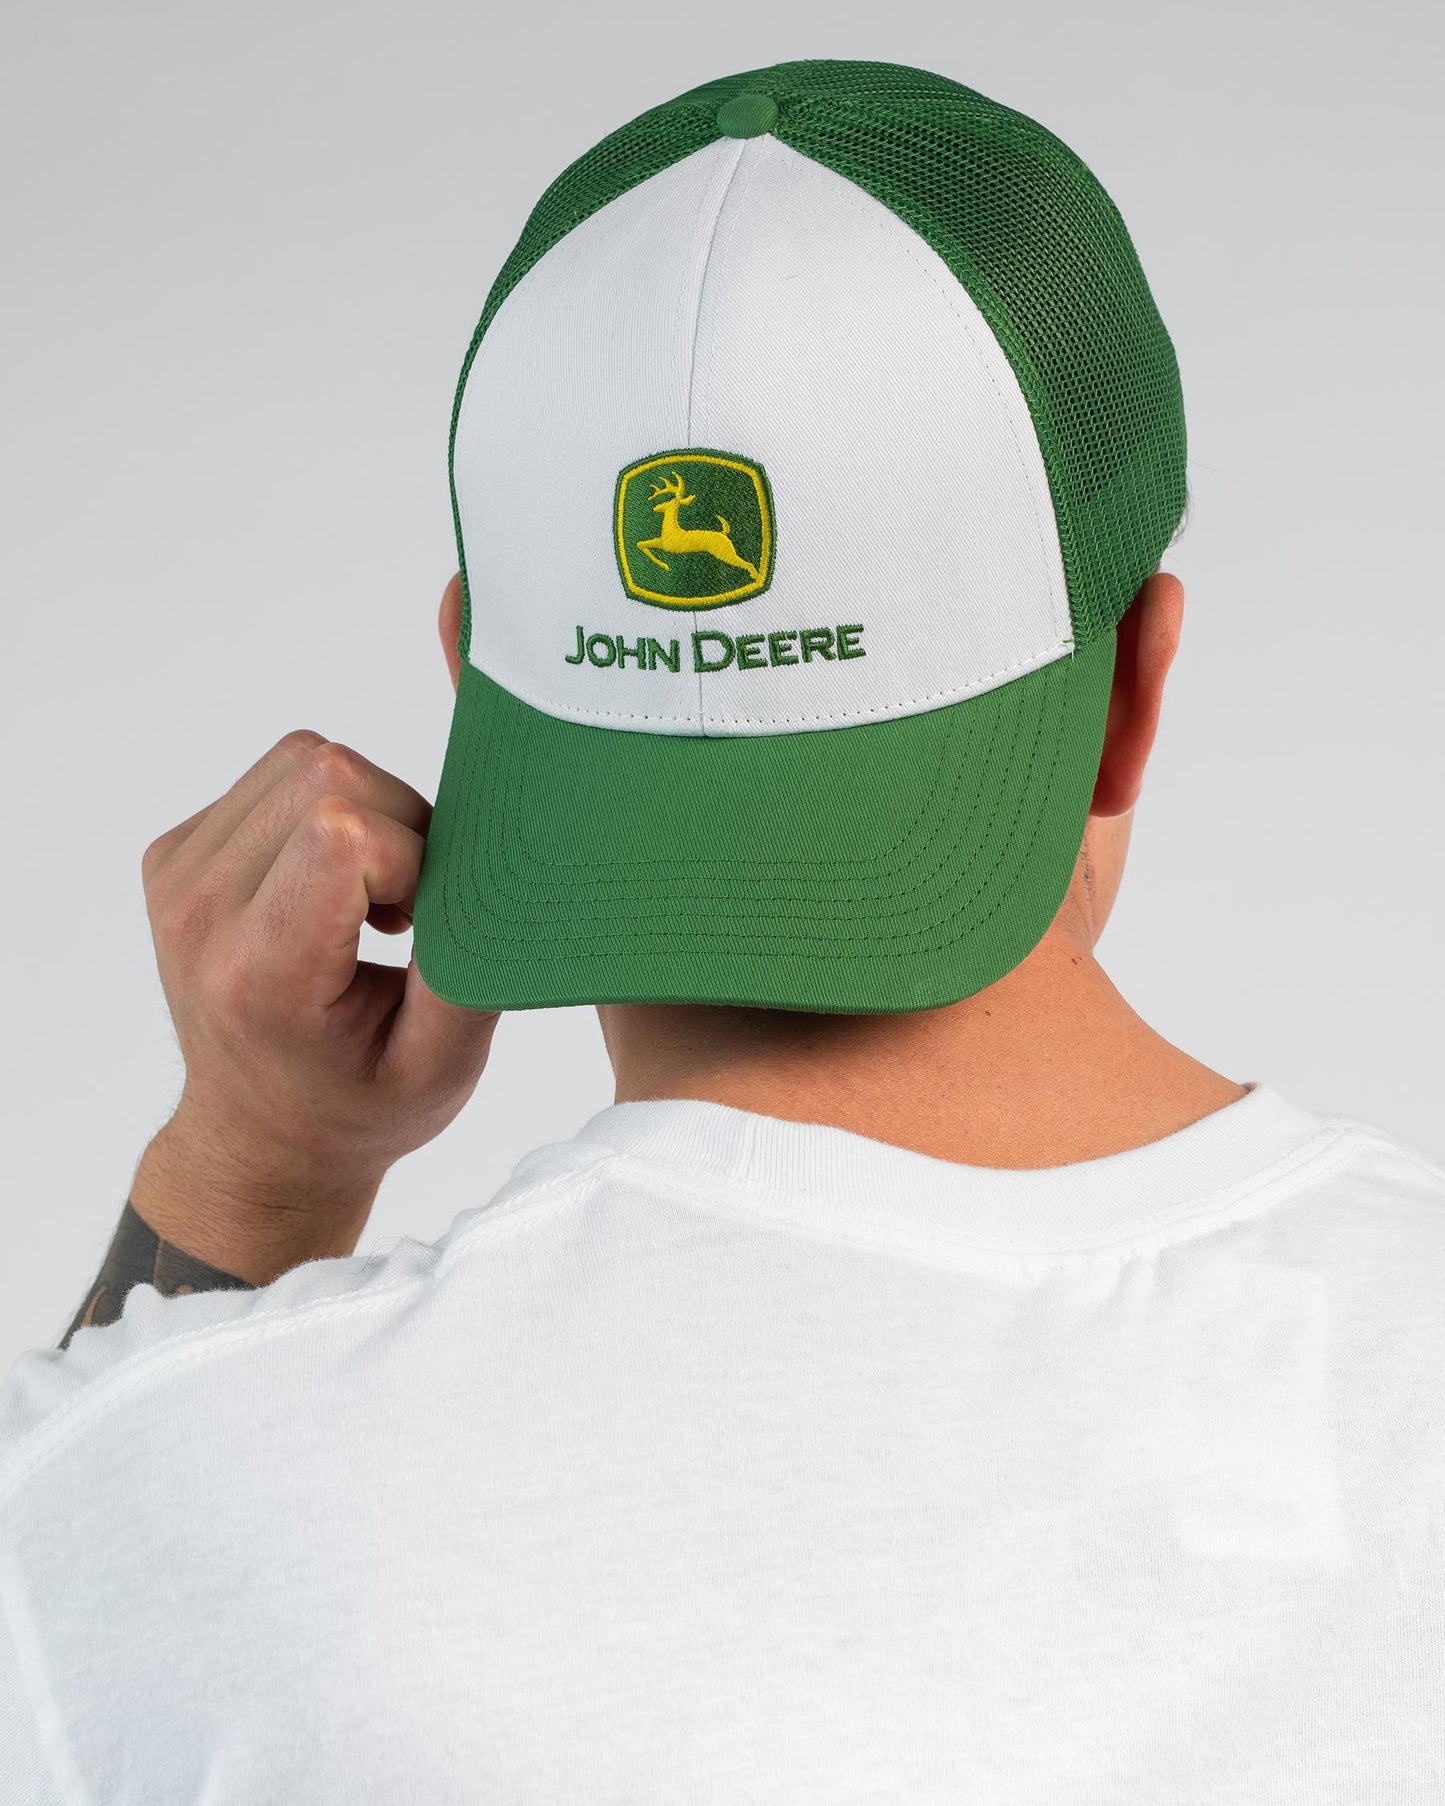 JOHN DEERE Logo 6 Panel Snapback Trucker Cap - White/Green